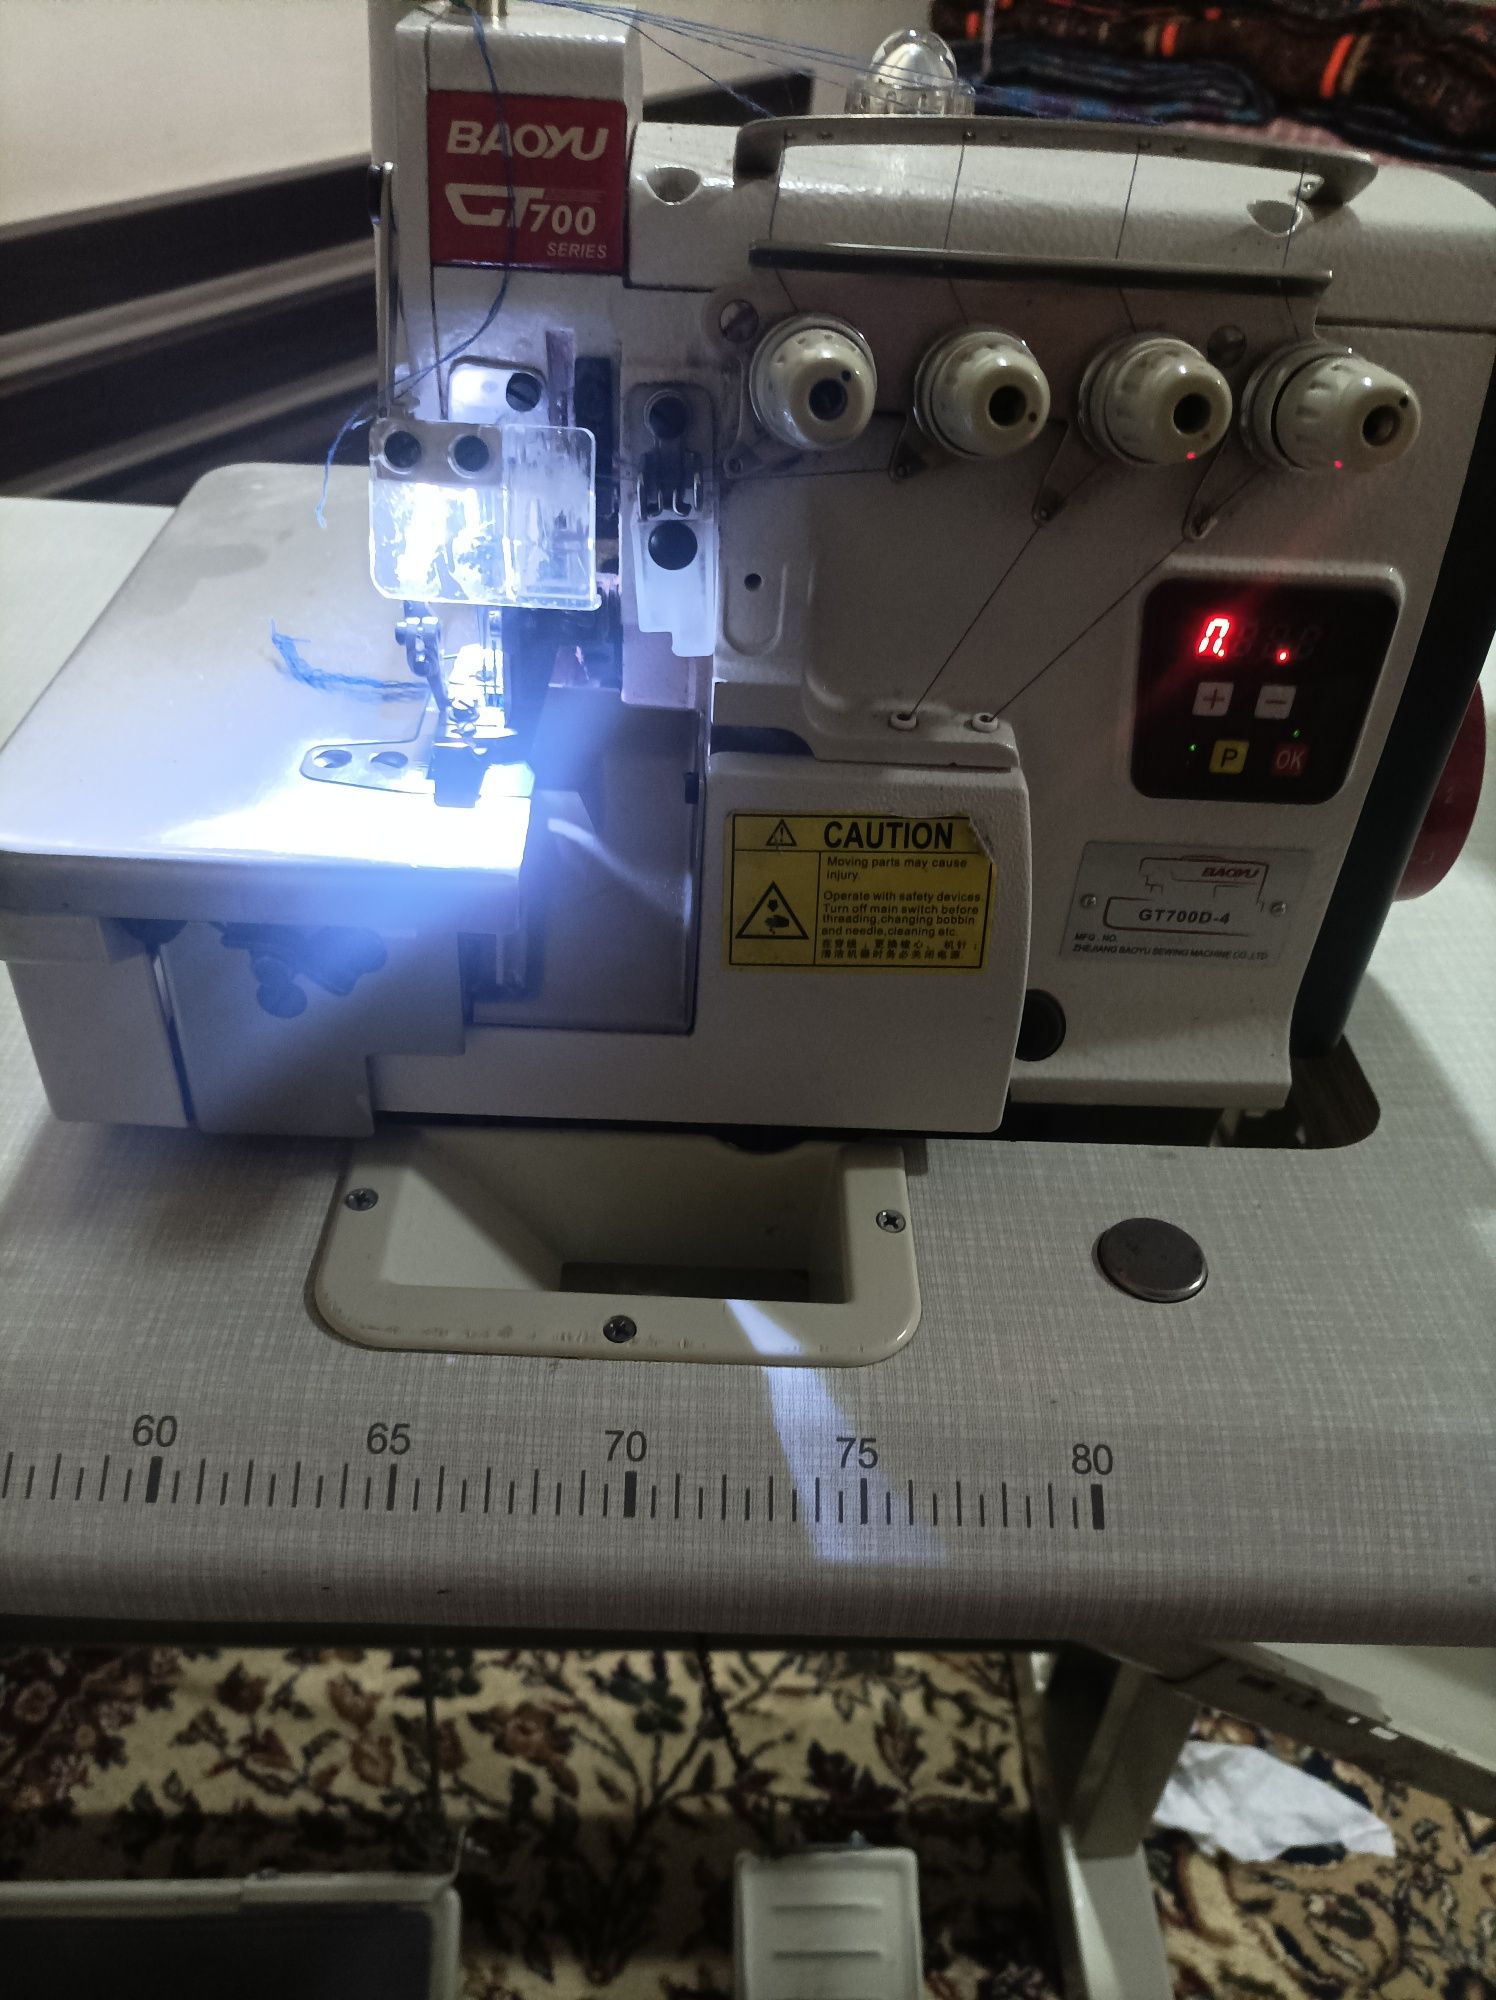 BAOYU 700 швейная машина аверлог